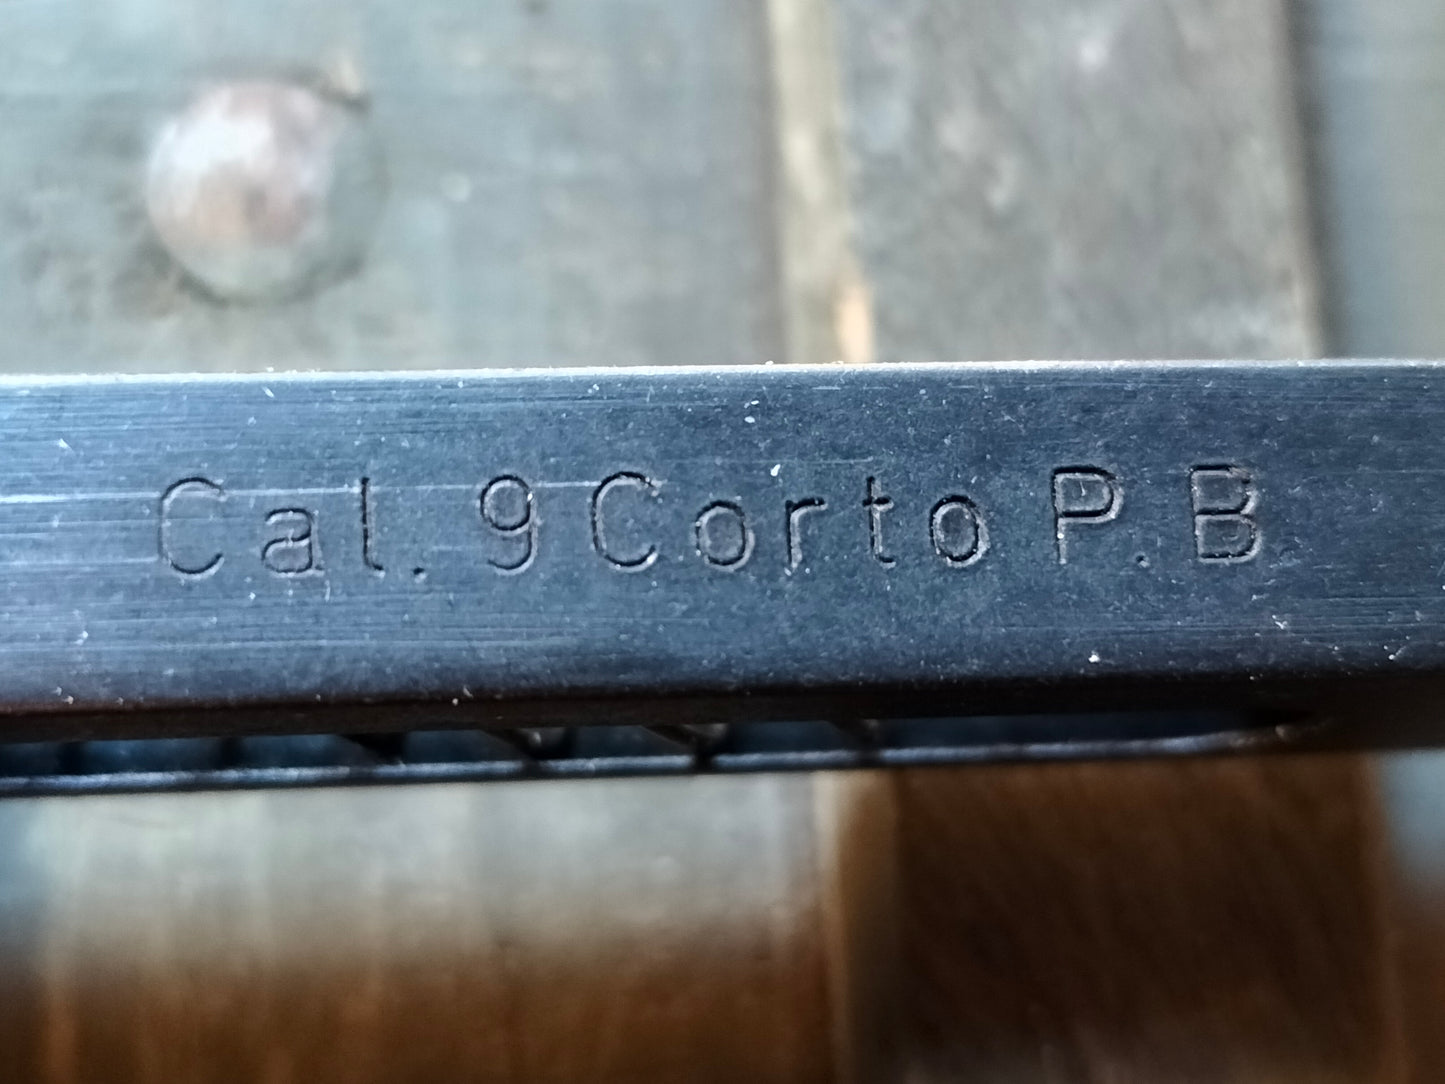 Caricatore Beretta 34 - 9 corto